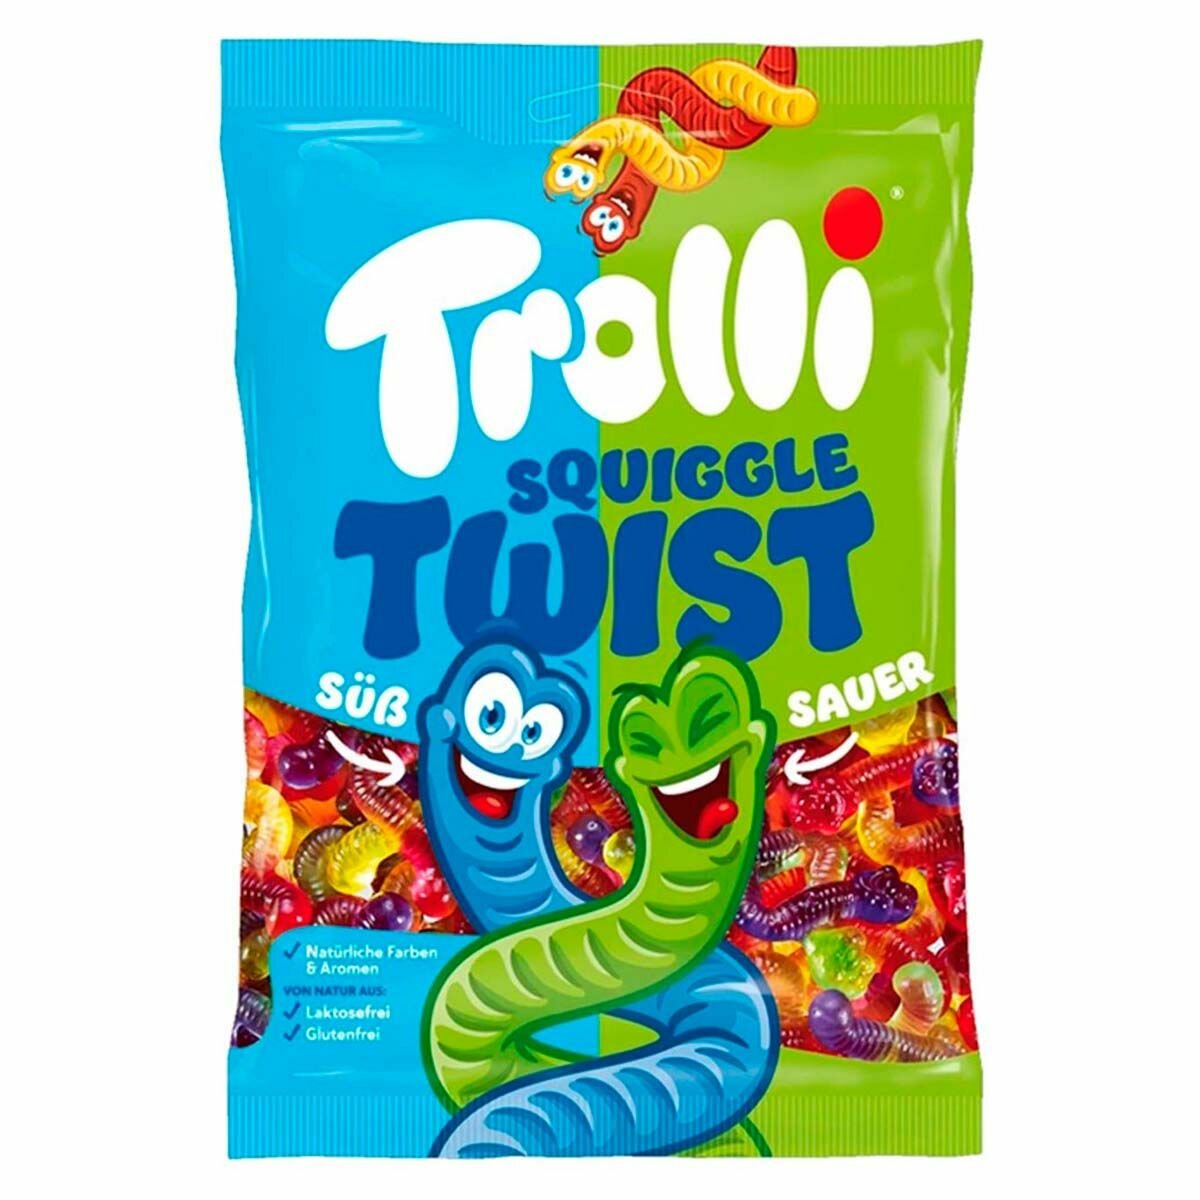 Жевательный мармелад Trolli Squiggle Twist переплетённые червячки (Германия), 1000 г